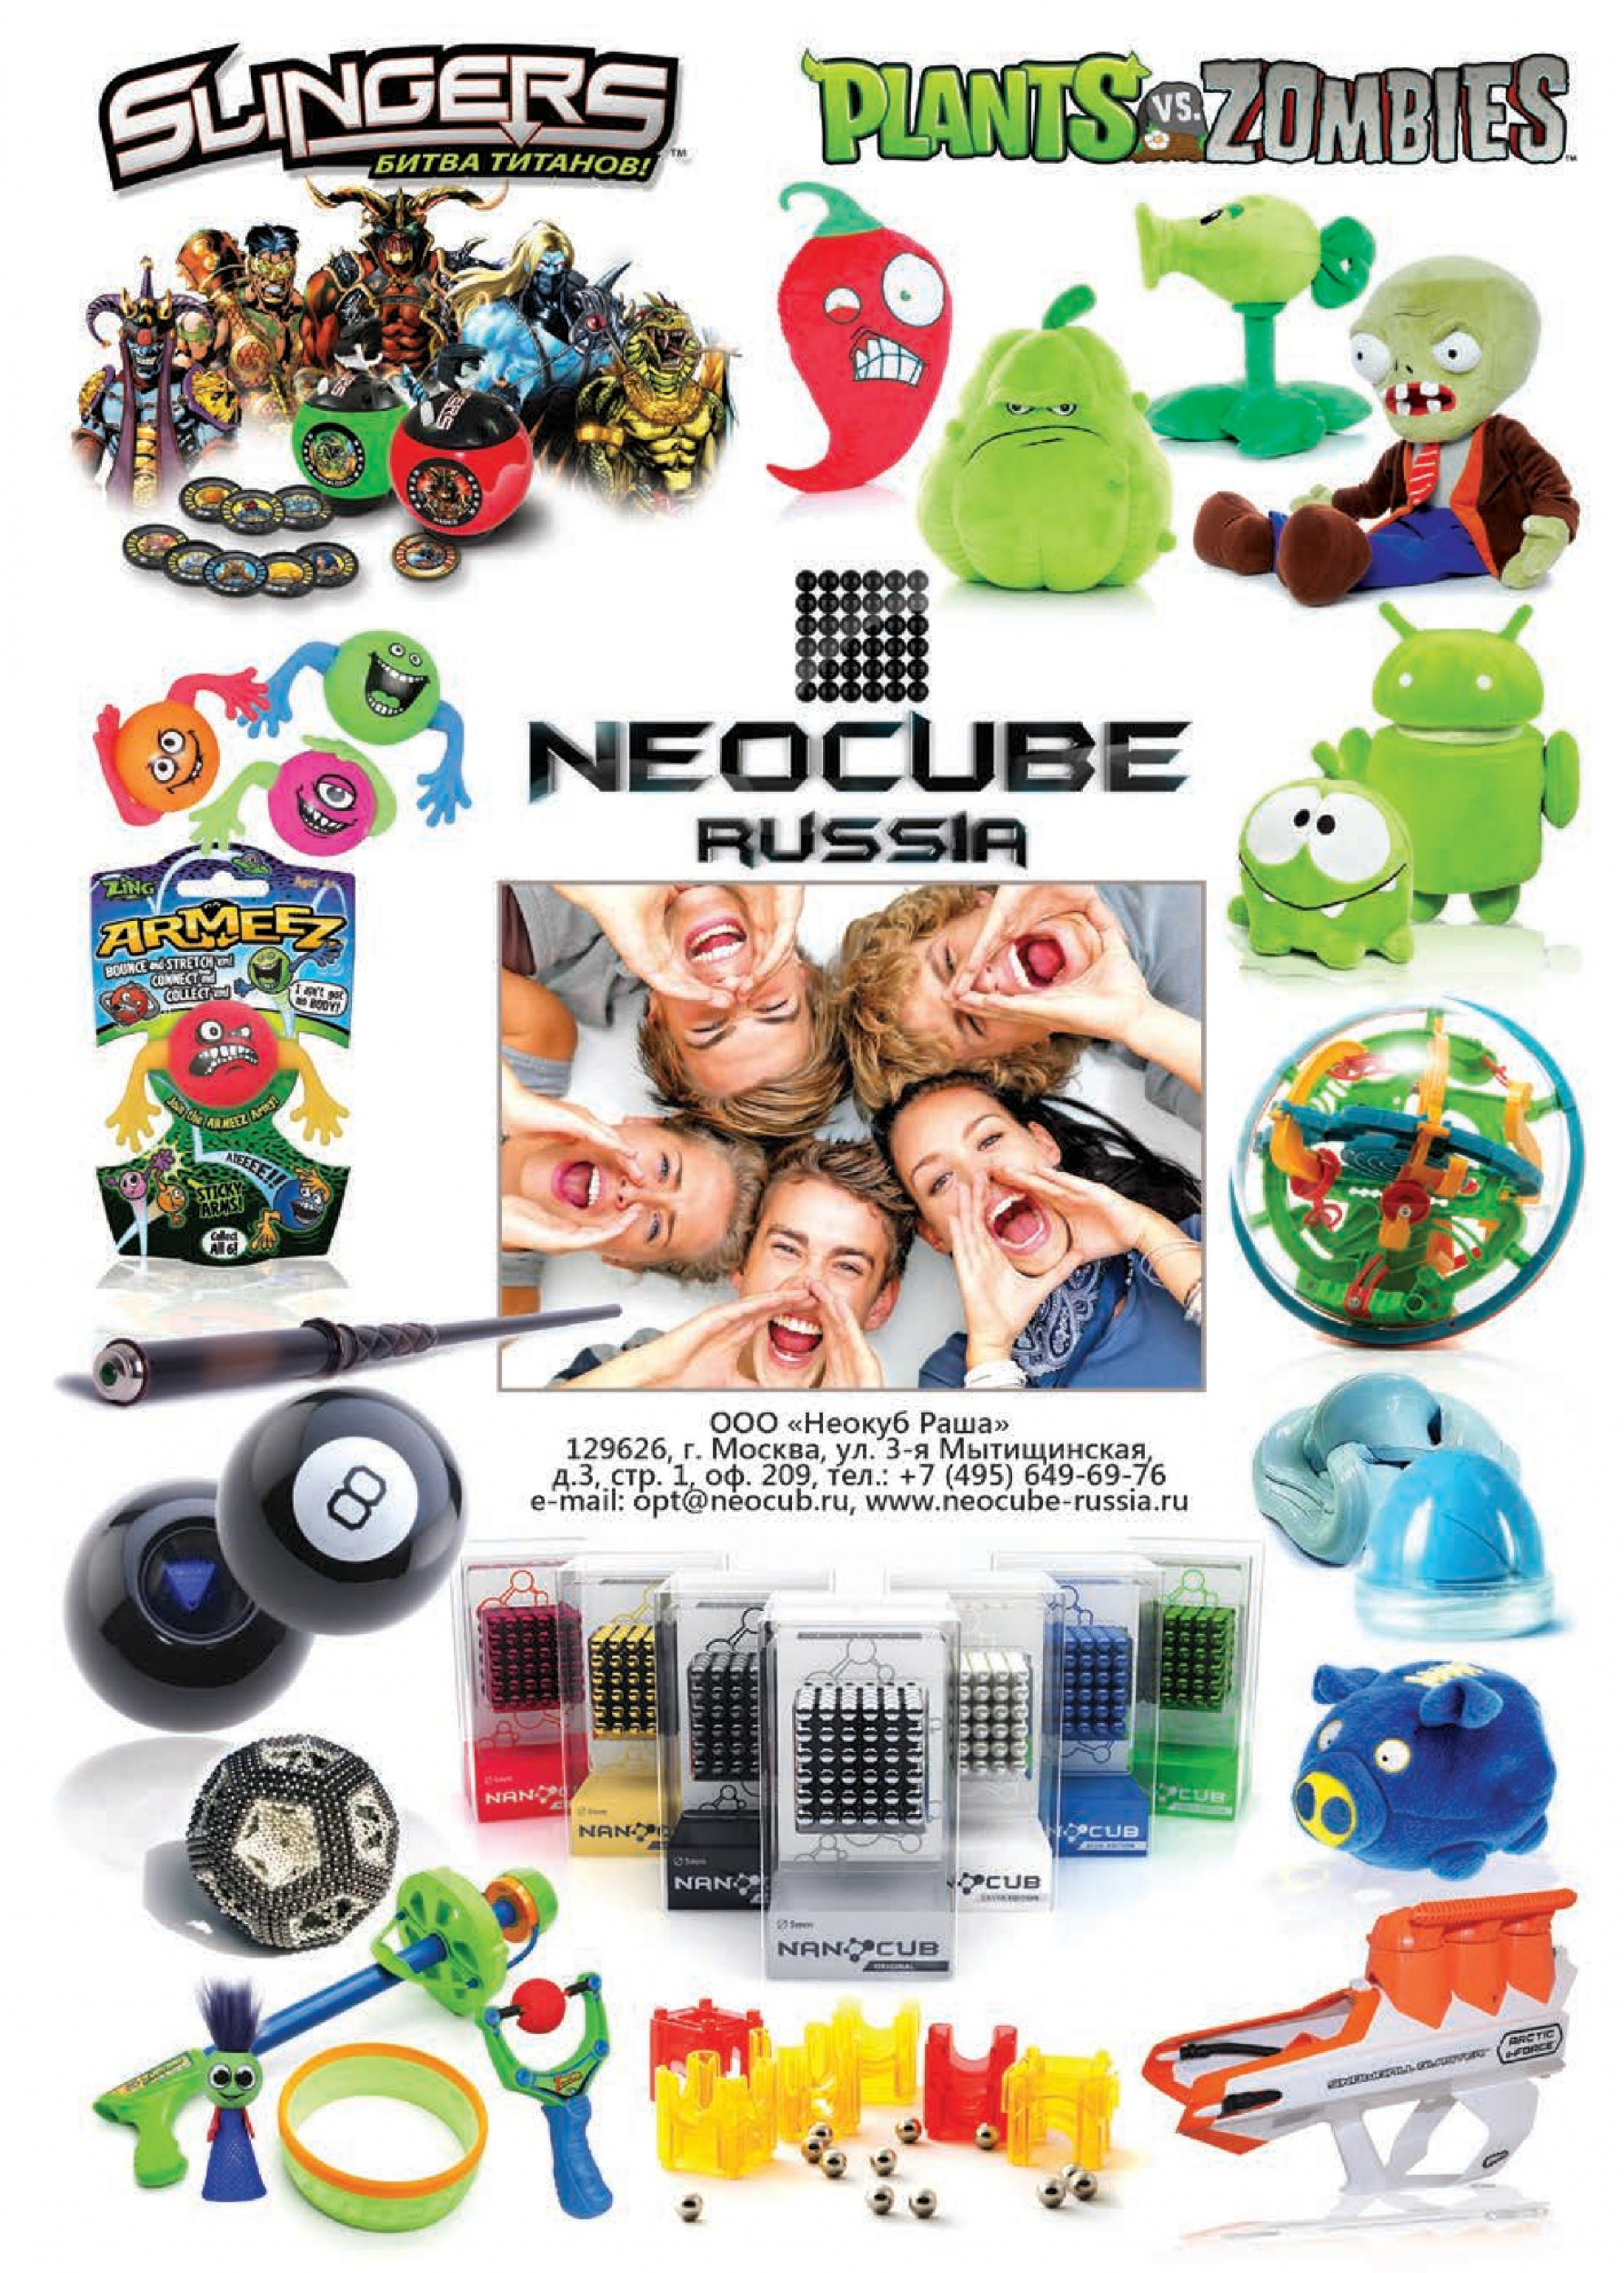 Продукция Neocube Russia